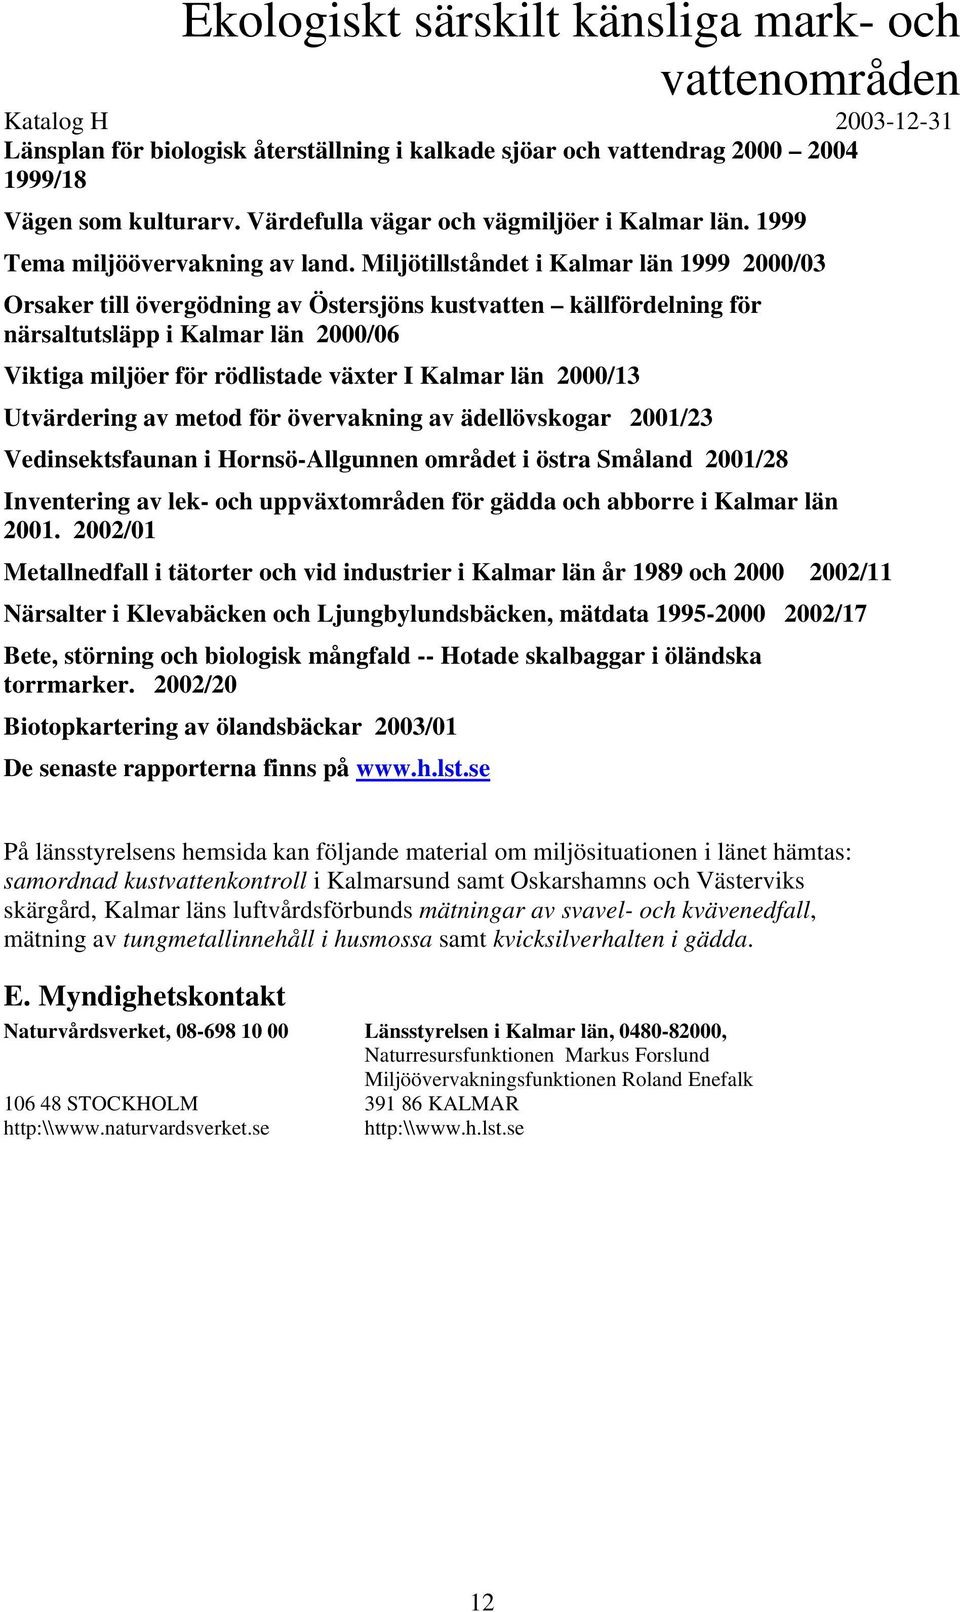 Miljötillståndet i Kalmar län 1999 2000/03 Orsaker till övergödning av Östersjöns kustvatten källfördelning för närsaltutsläpp i Kalmar län 2000/06 Viktiga miljöer för rödlistade växter I Kalmar län